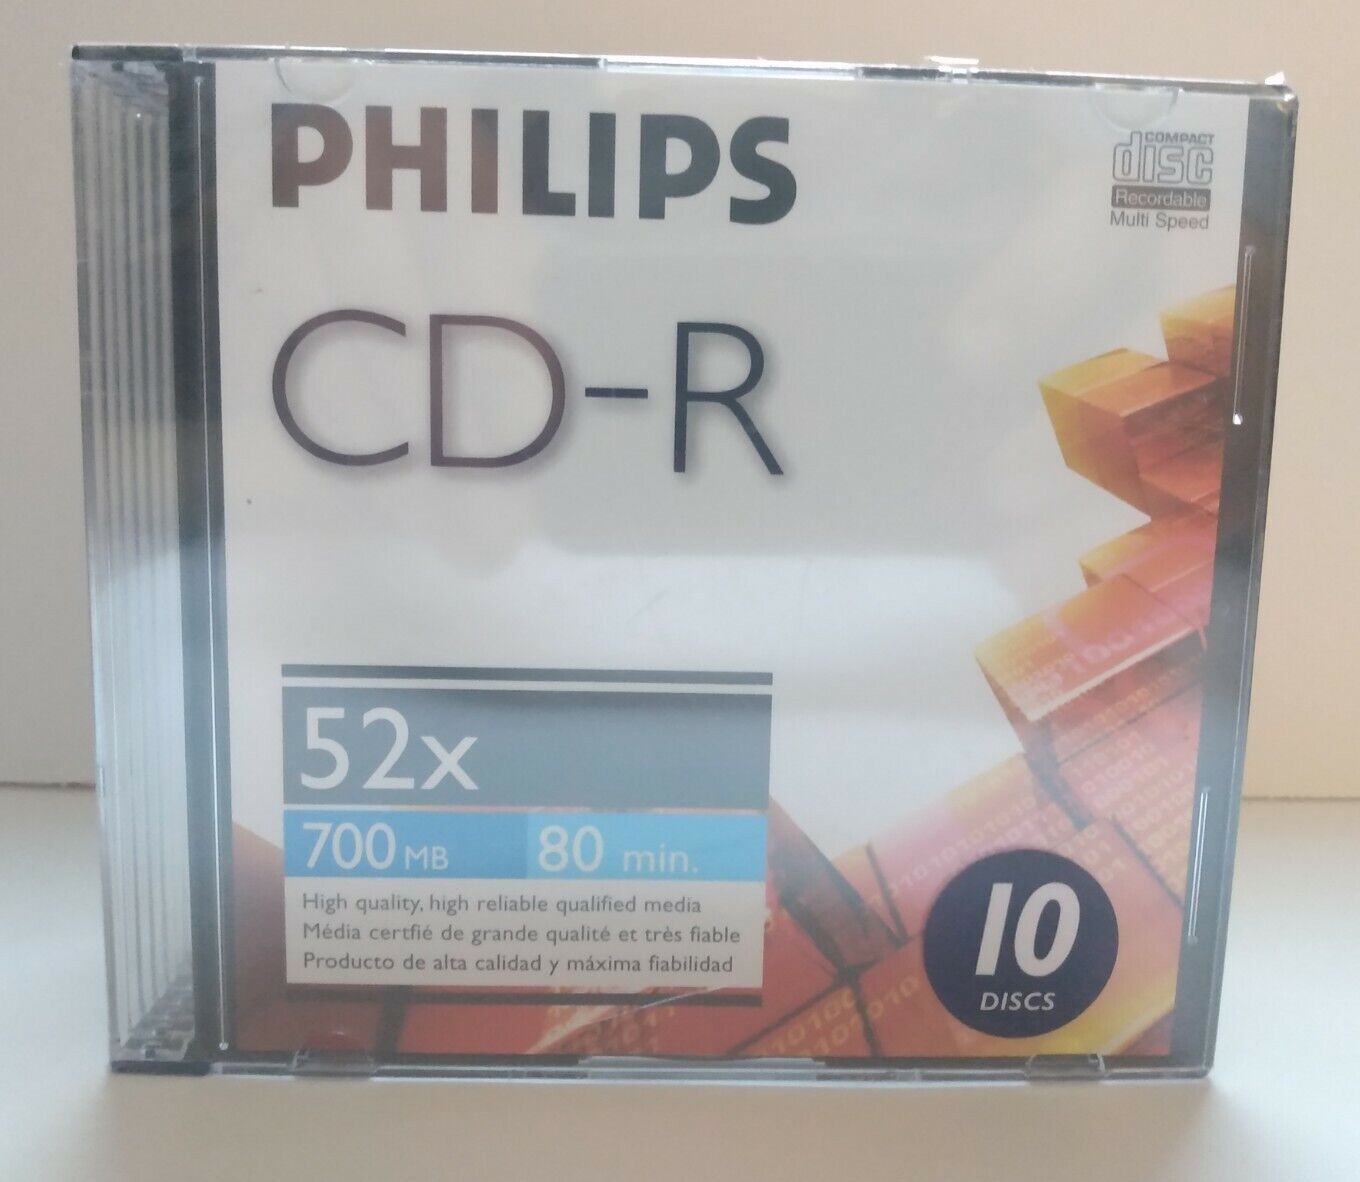 Philips CD-R 52X 700MB 80MIN 10 DISCS